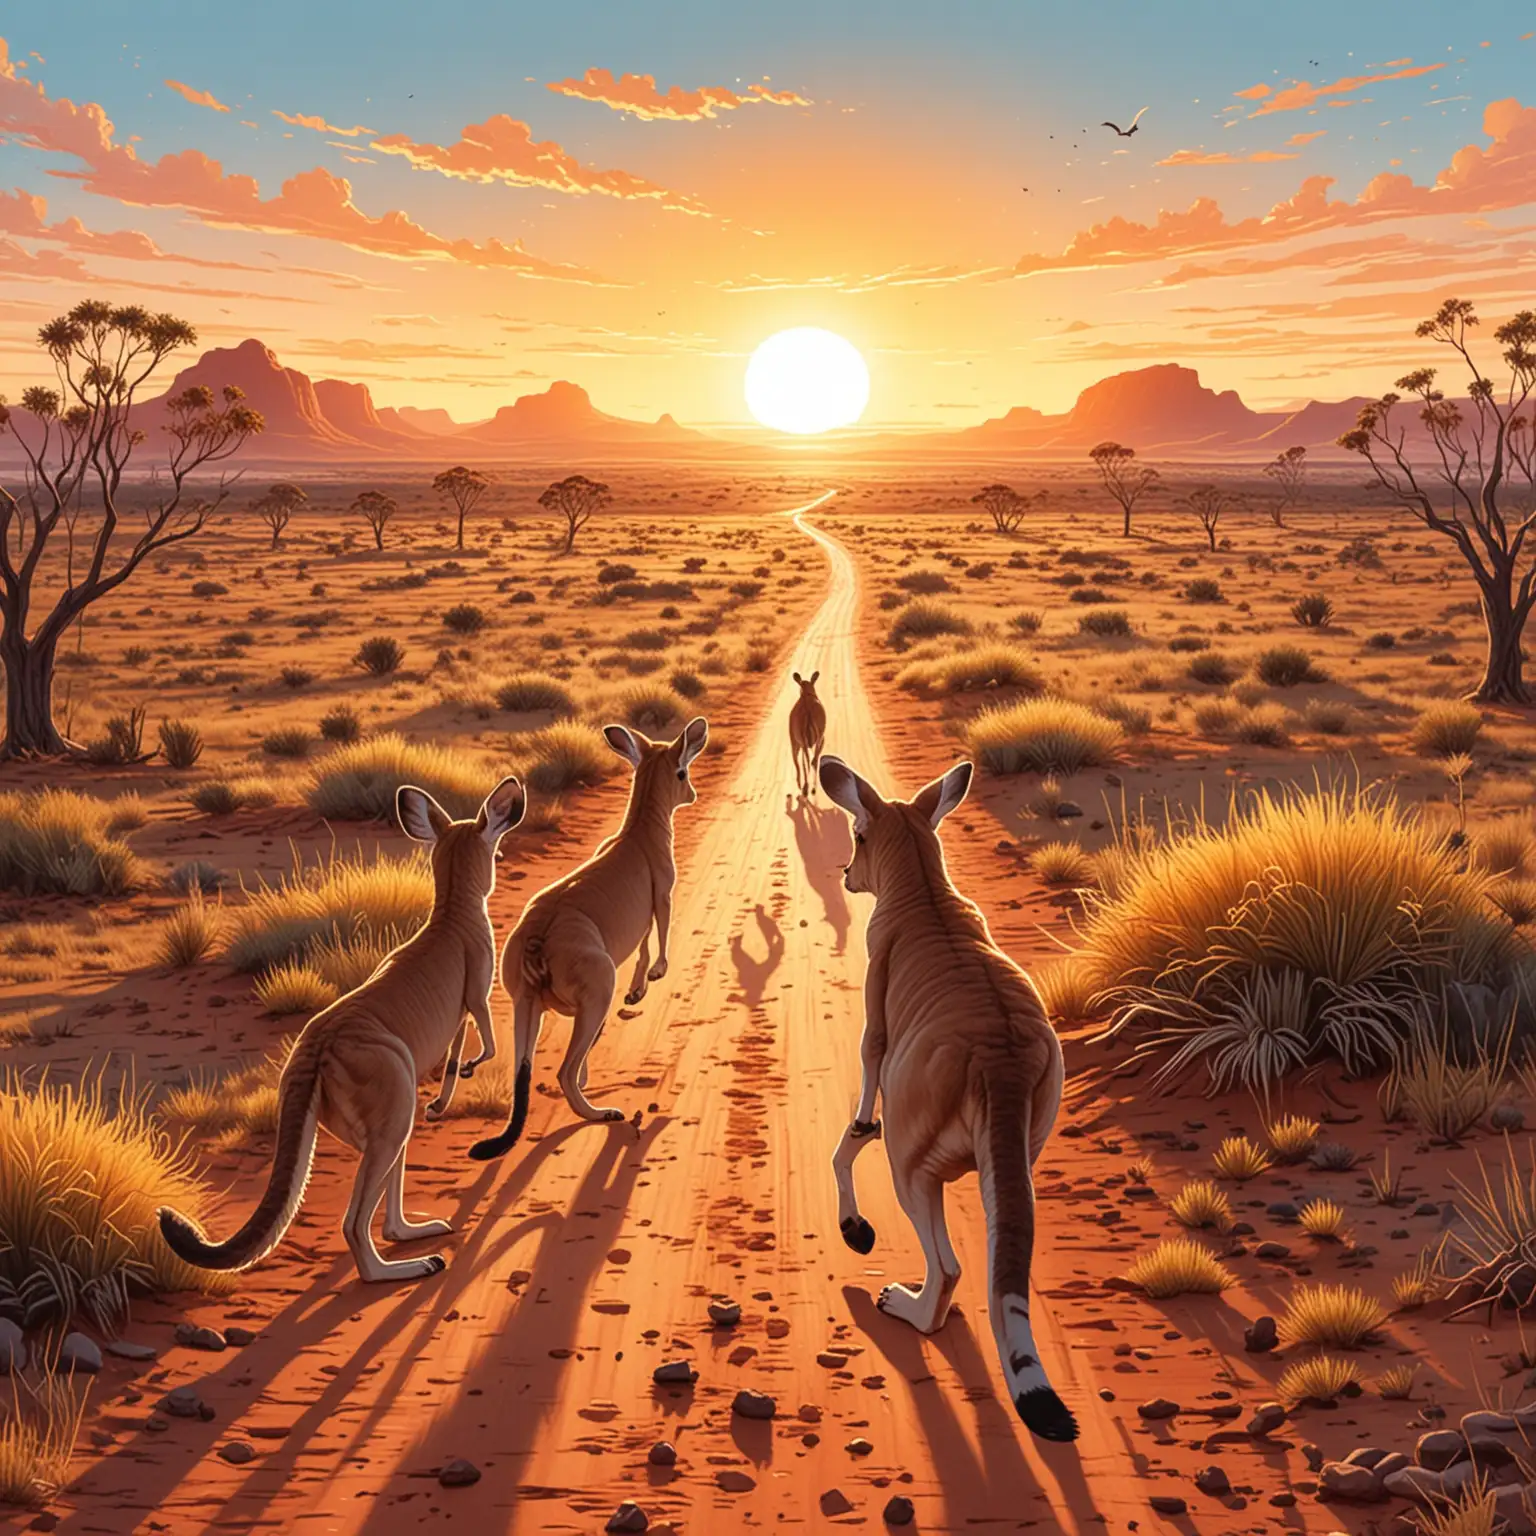 Illustration, Kawaii stil, Australien
Titel: Der Sonnenaufgang im Outback
Illustration: Die Sonne bricht über die endlose Weite des Outbacks, während sich im Hintergrund Kängurus über die Ebene hüpfen. 